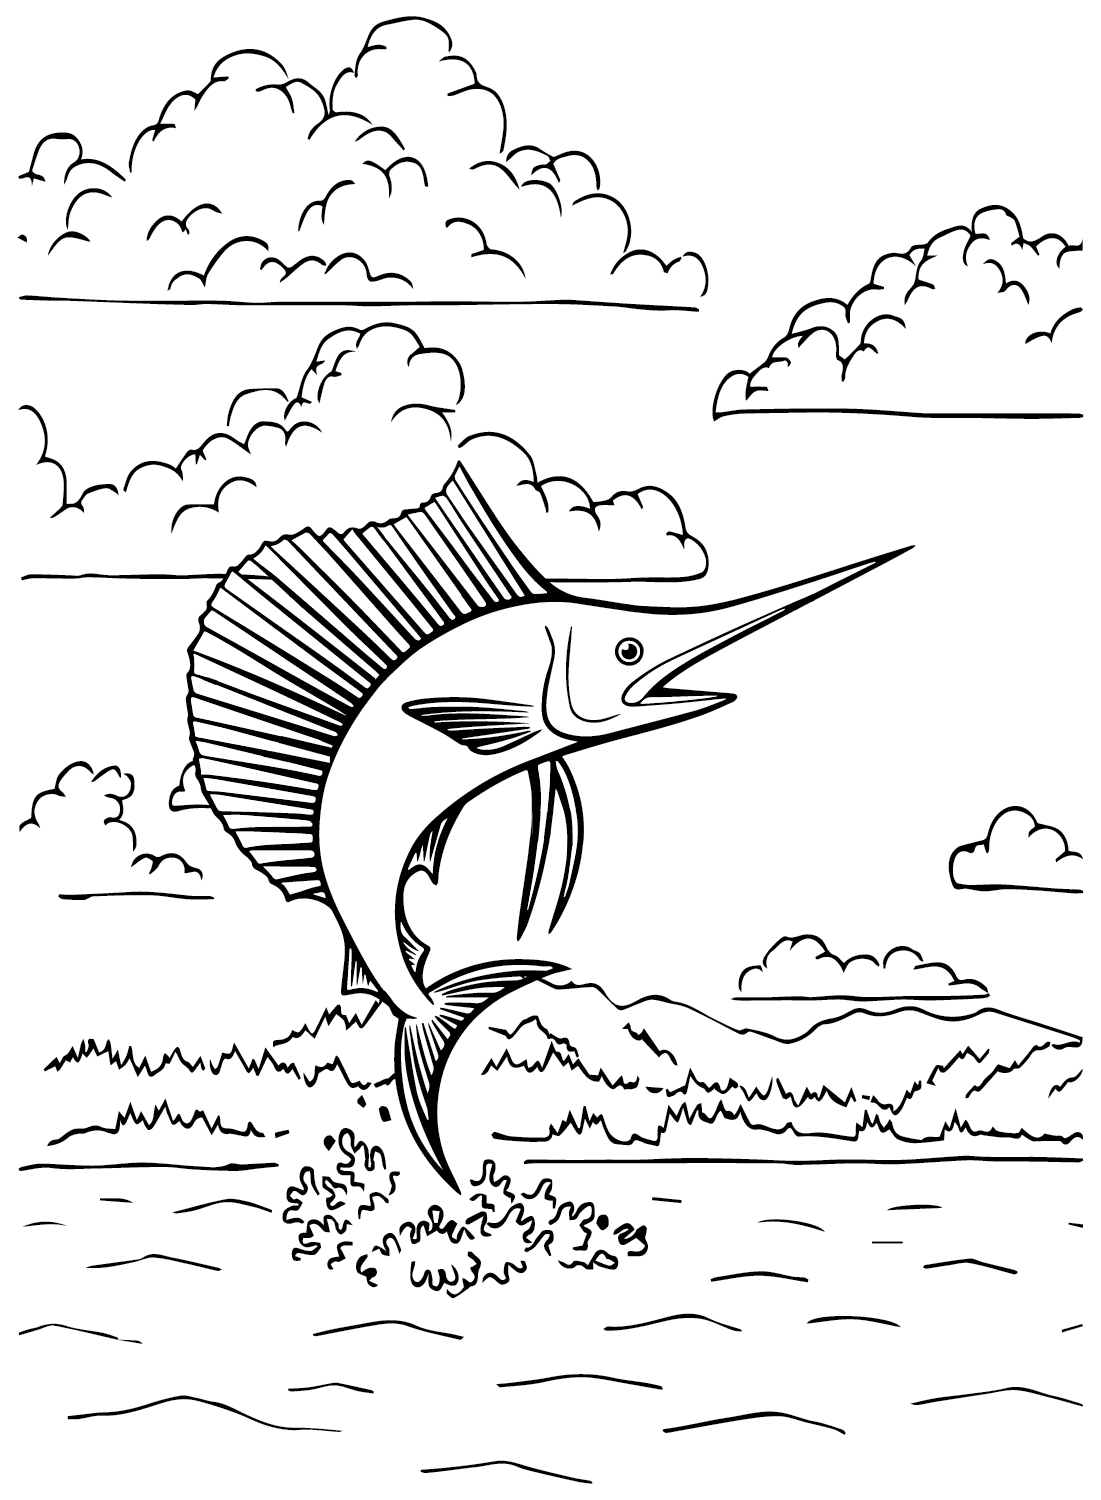 Sailfish para colorir de Sailfish